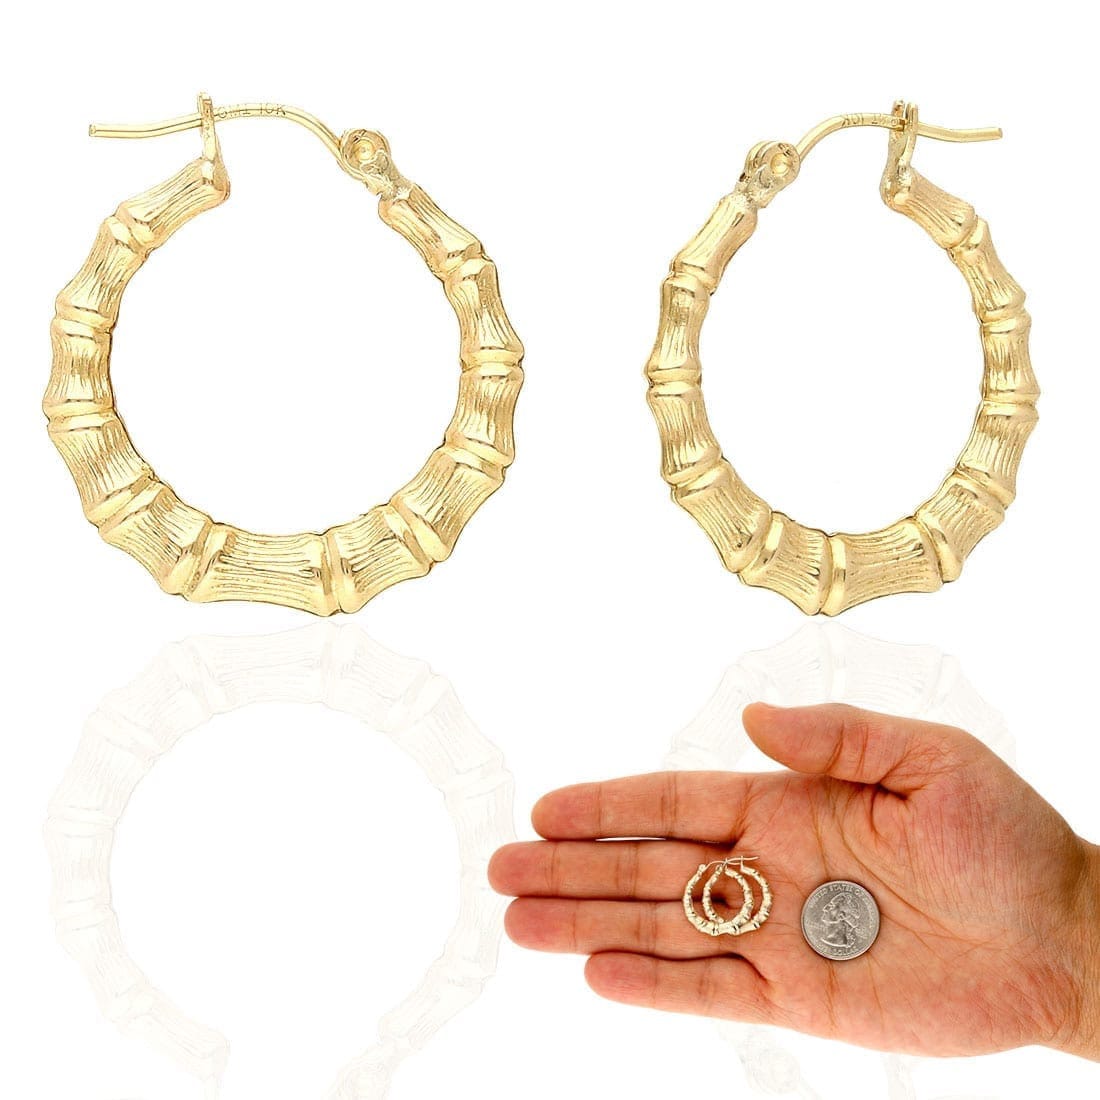 Genuine 18K Gold Bamboo Hoop Earrings 17-85mm- SOLID Custom Made